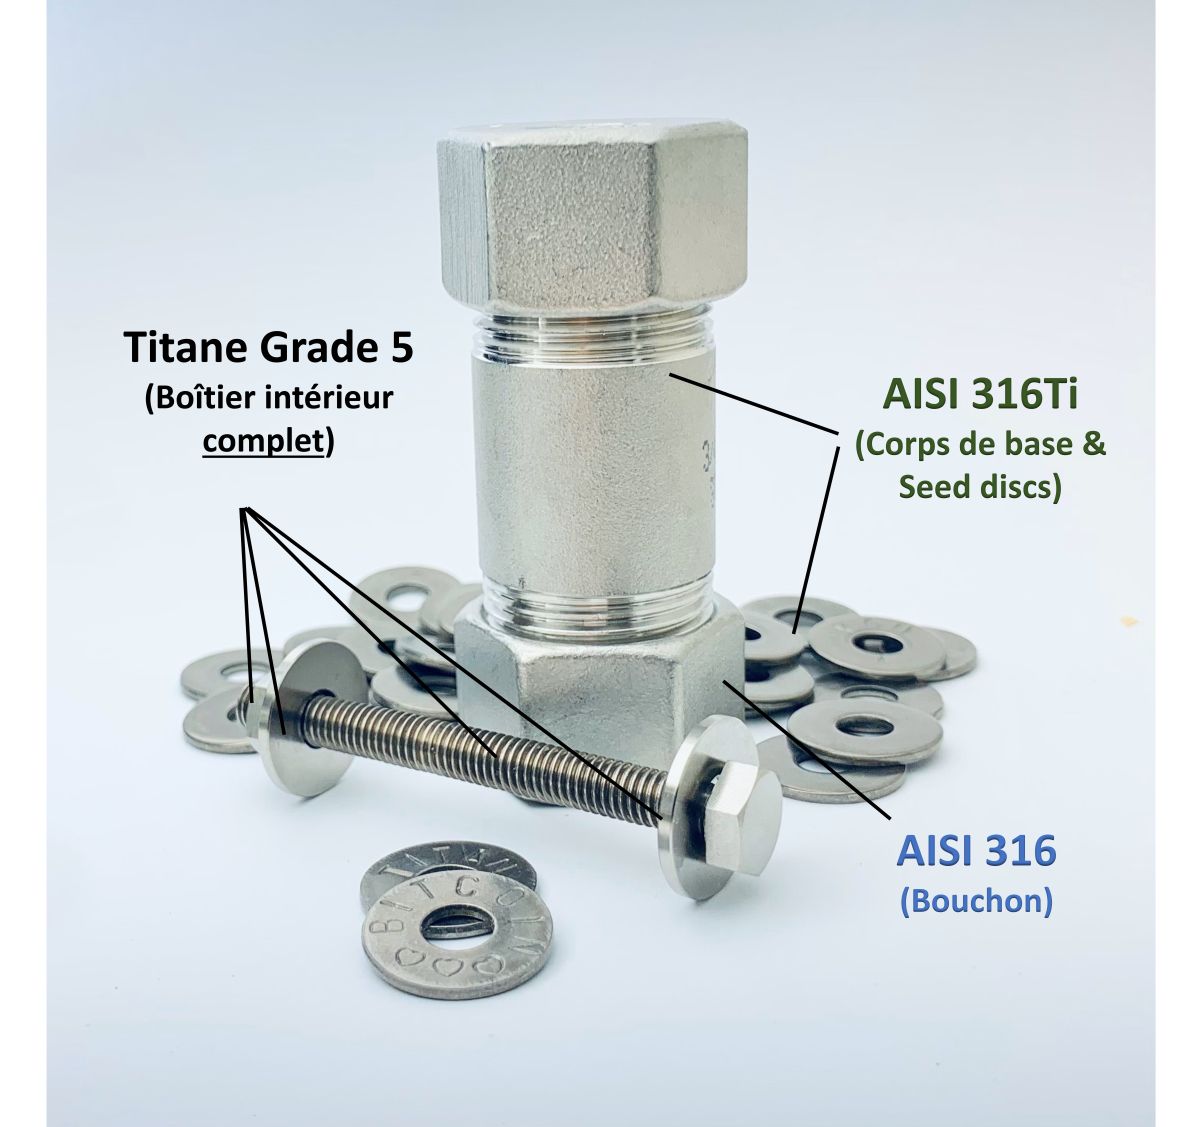 Illustration des matériaux du portefeuille Titan - AISI316TI pour le corps de base et les Seed disques, Titane Grade 5 pour l'intérieur, AISI 316 pour les bouchons.